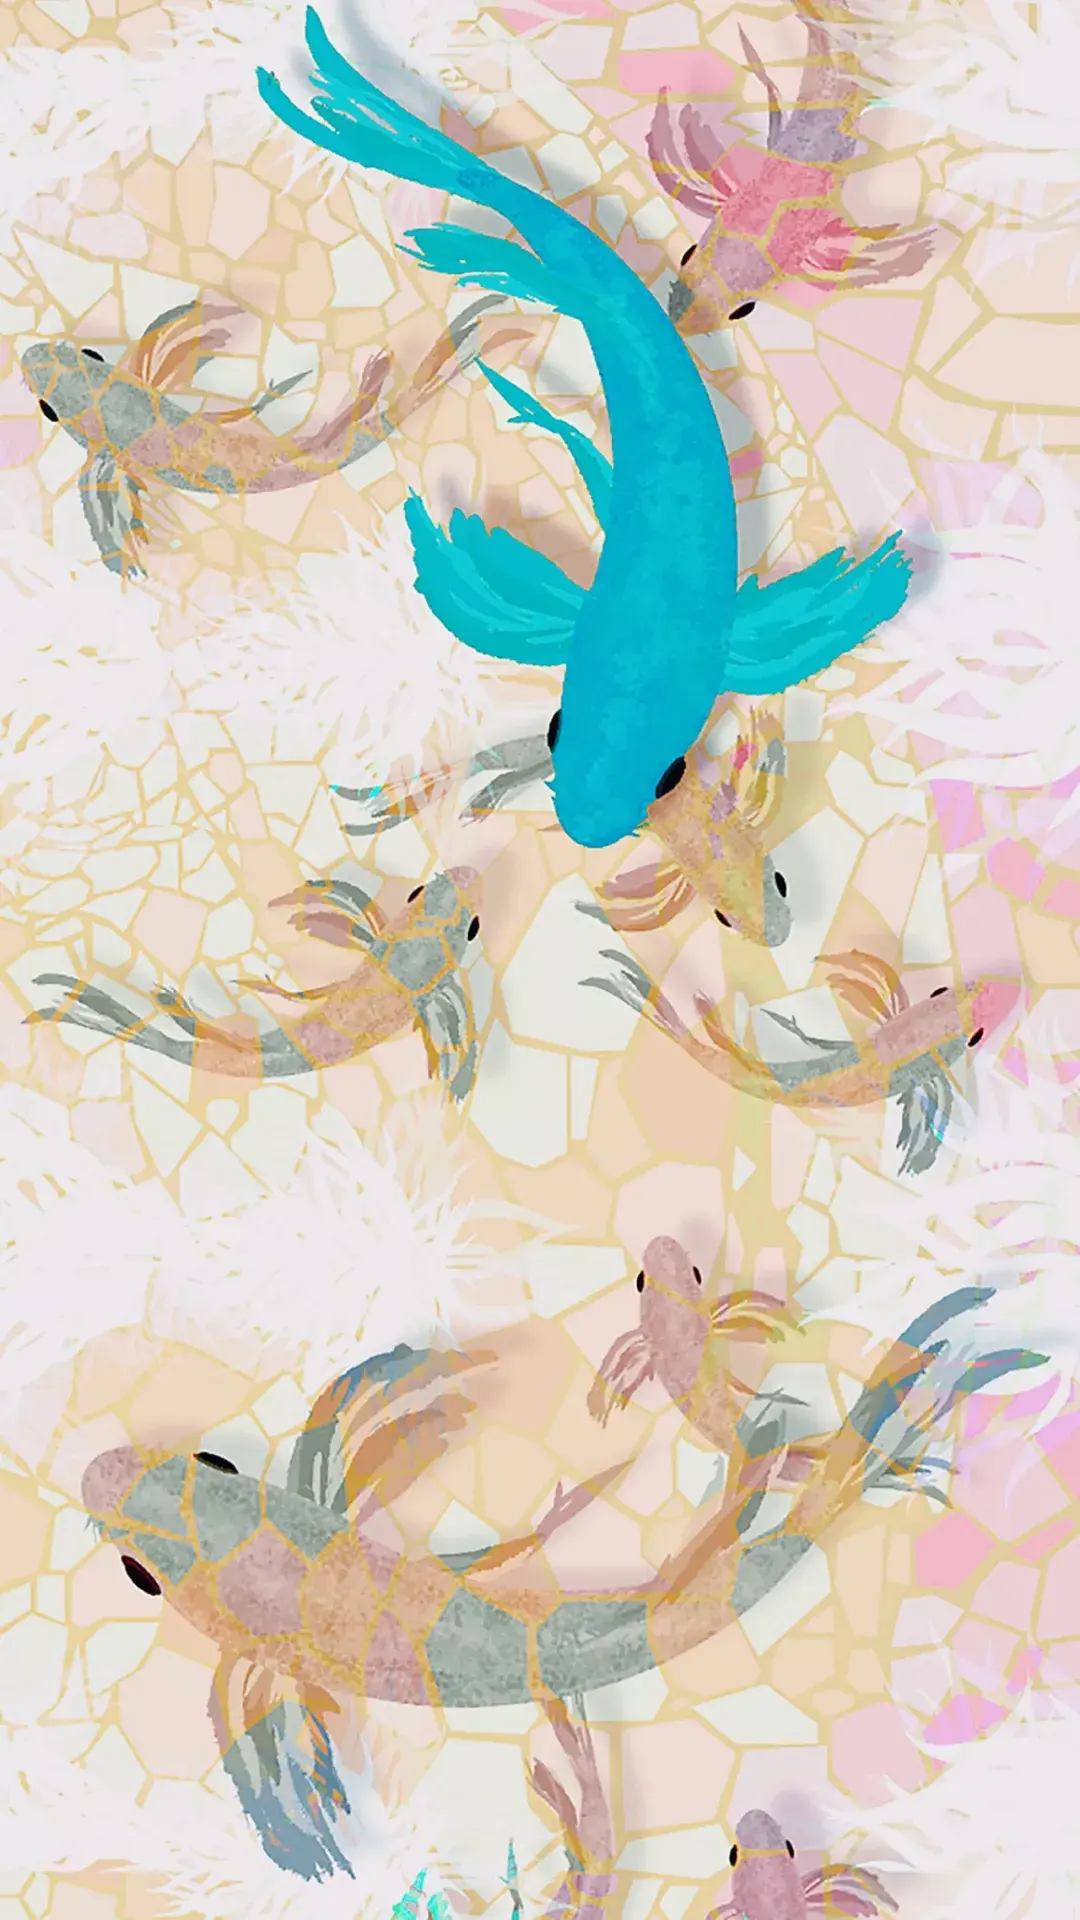 锦鲤 koi壁纸【9】(动物静态壁纸) - 静态壁纸下载 - 元气壁纸